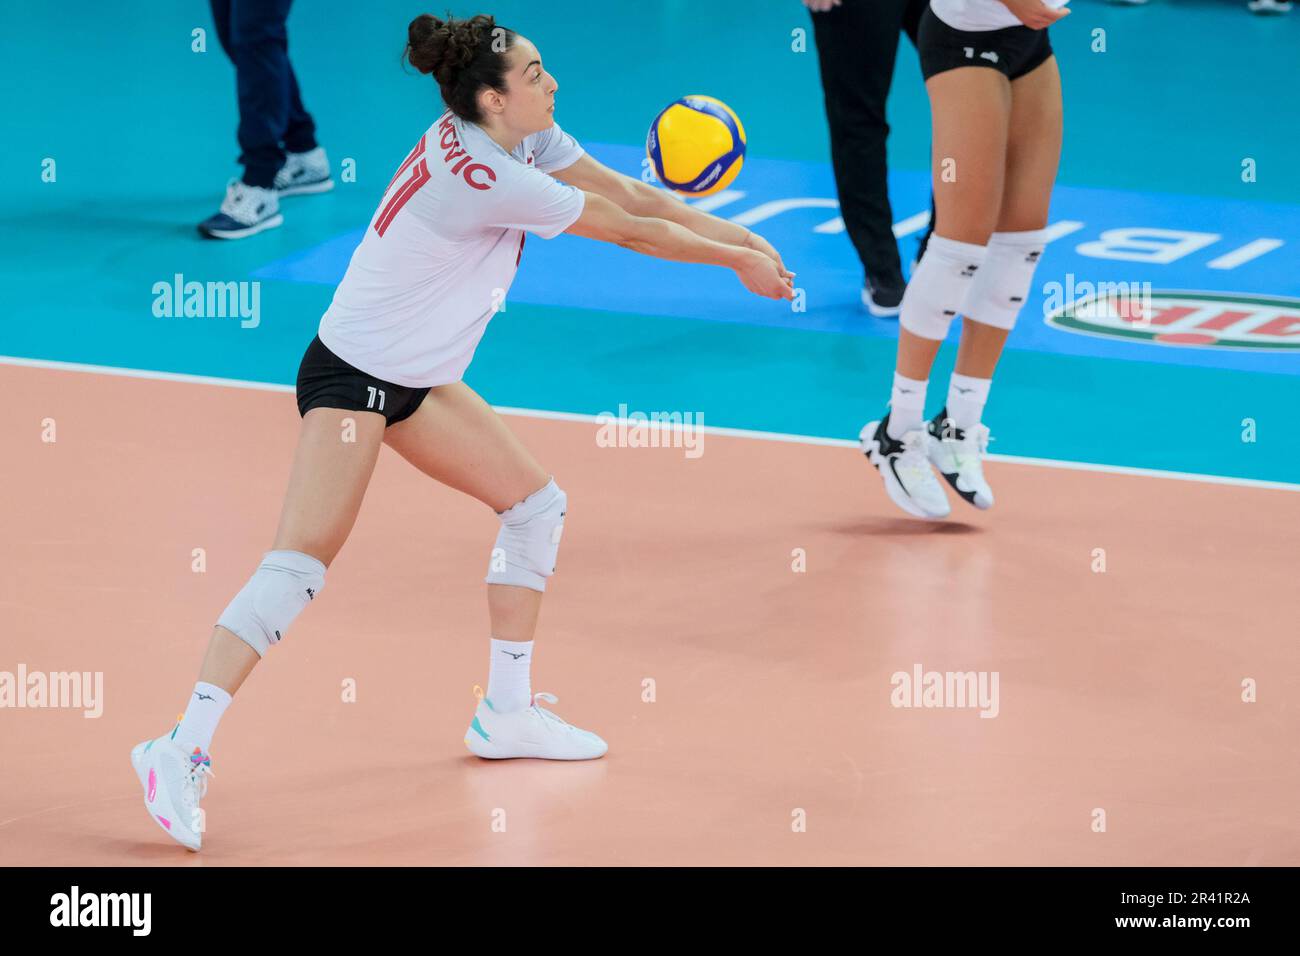 Andrea Mitrovic, du Canada, en action lors du tournoi DHL Test Match de volley-ball féminin entre l’Italie et le Canada au Palazzetto dello Sport. Note finale; Italie 3:1 Canada. Banque D'Images